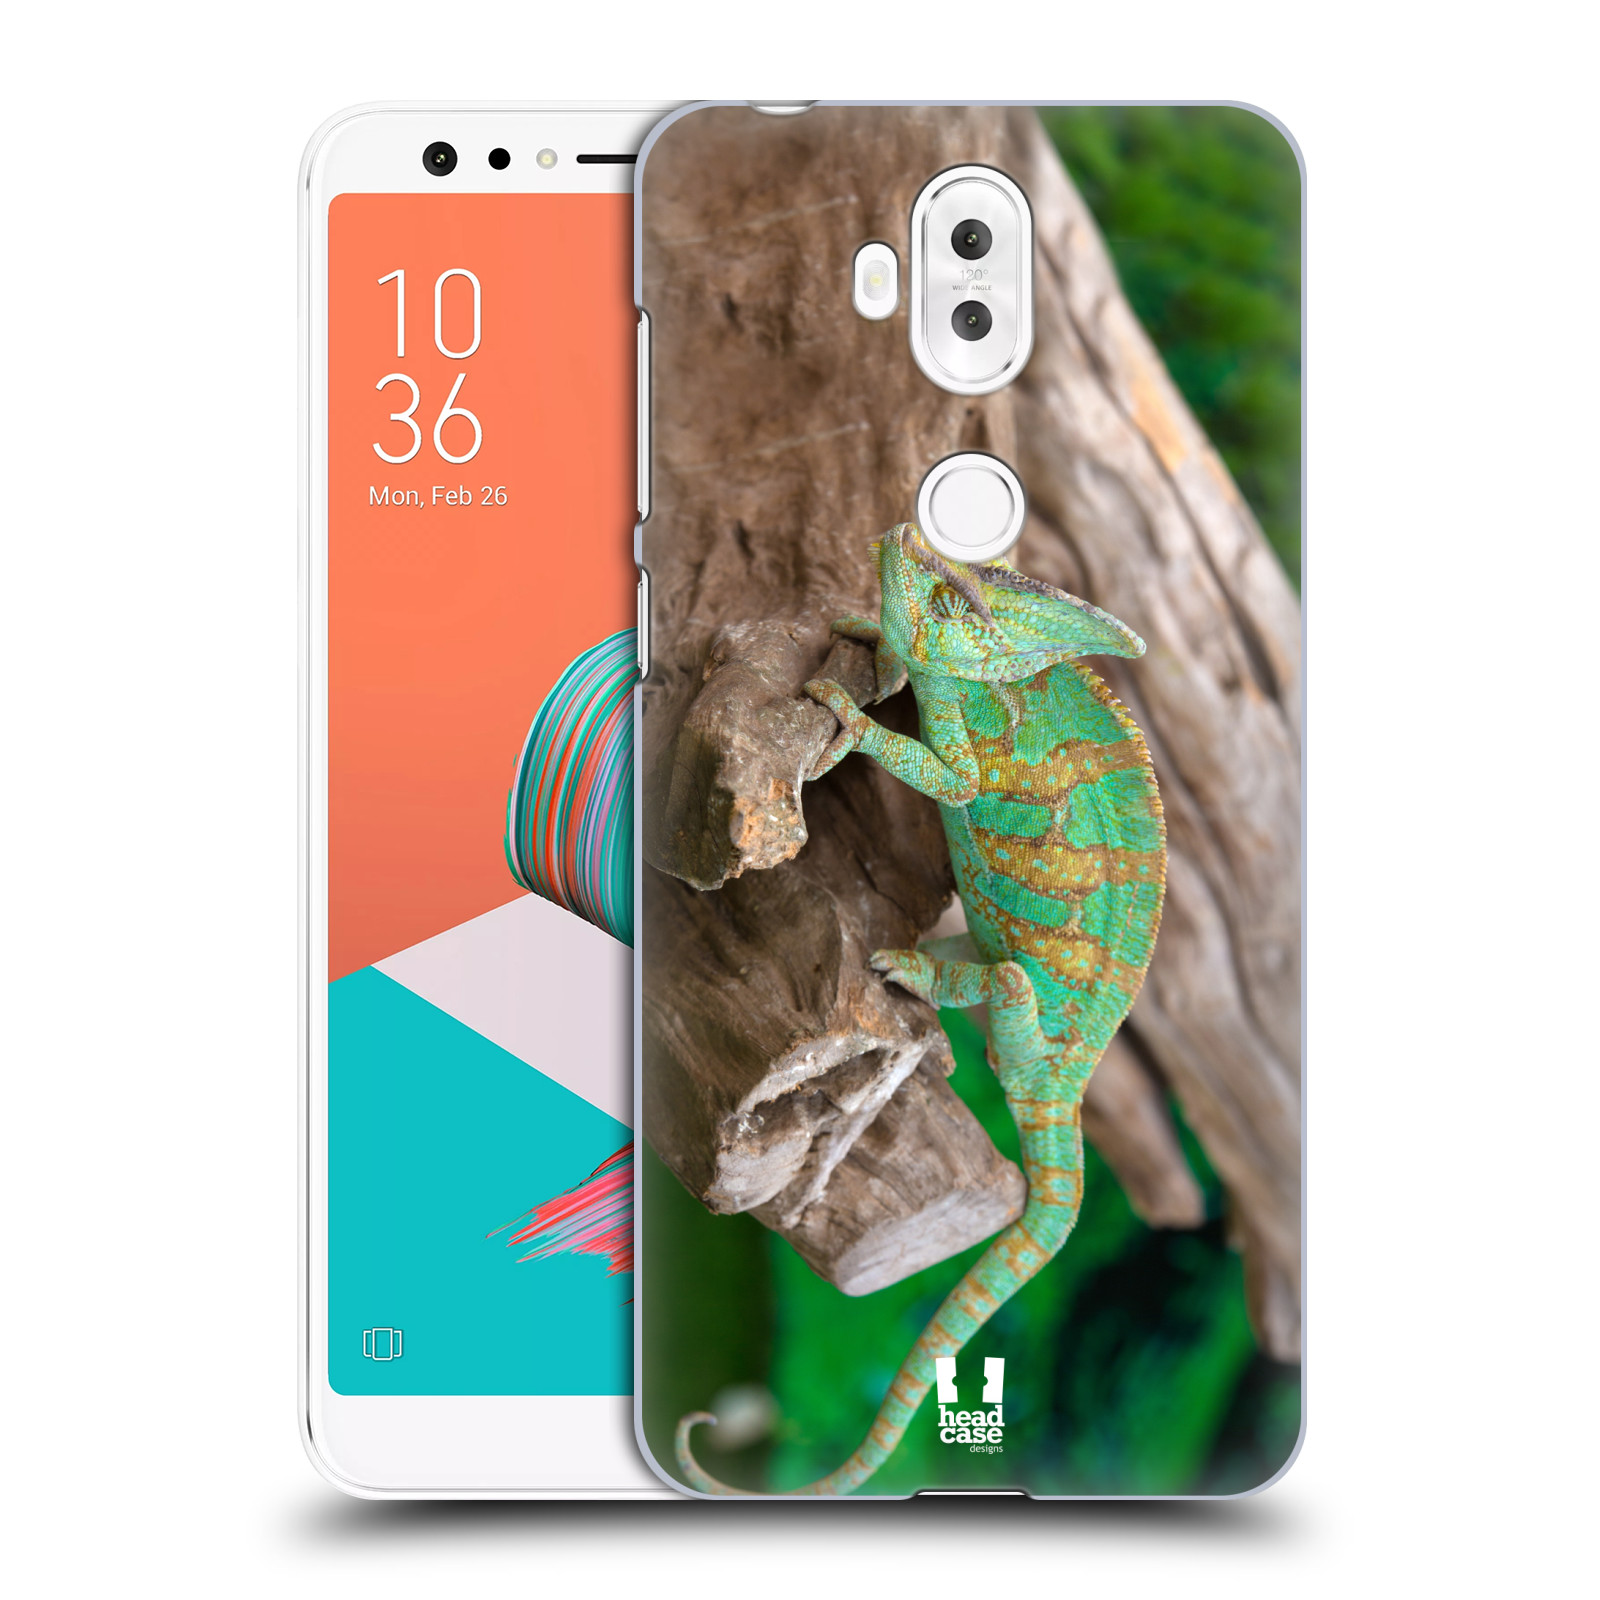 HEAD CASE plastový obal na mobil Asus Zenfone 5 LITE ZC600KL vzor slavná zvířata foto chameleon